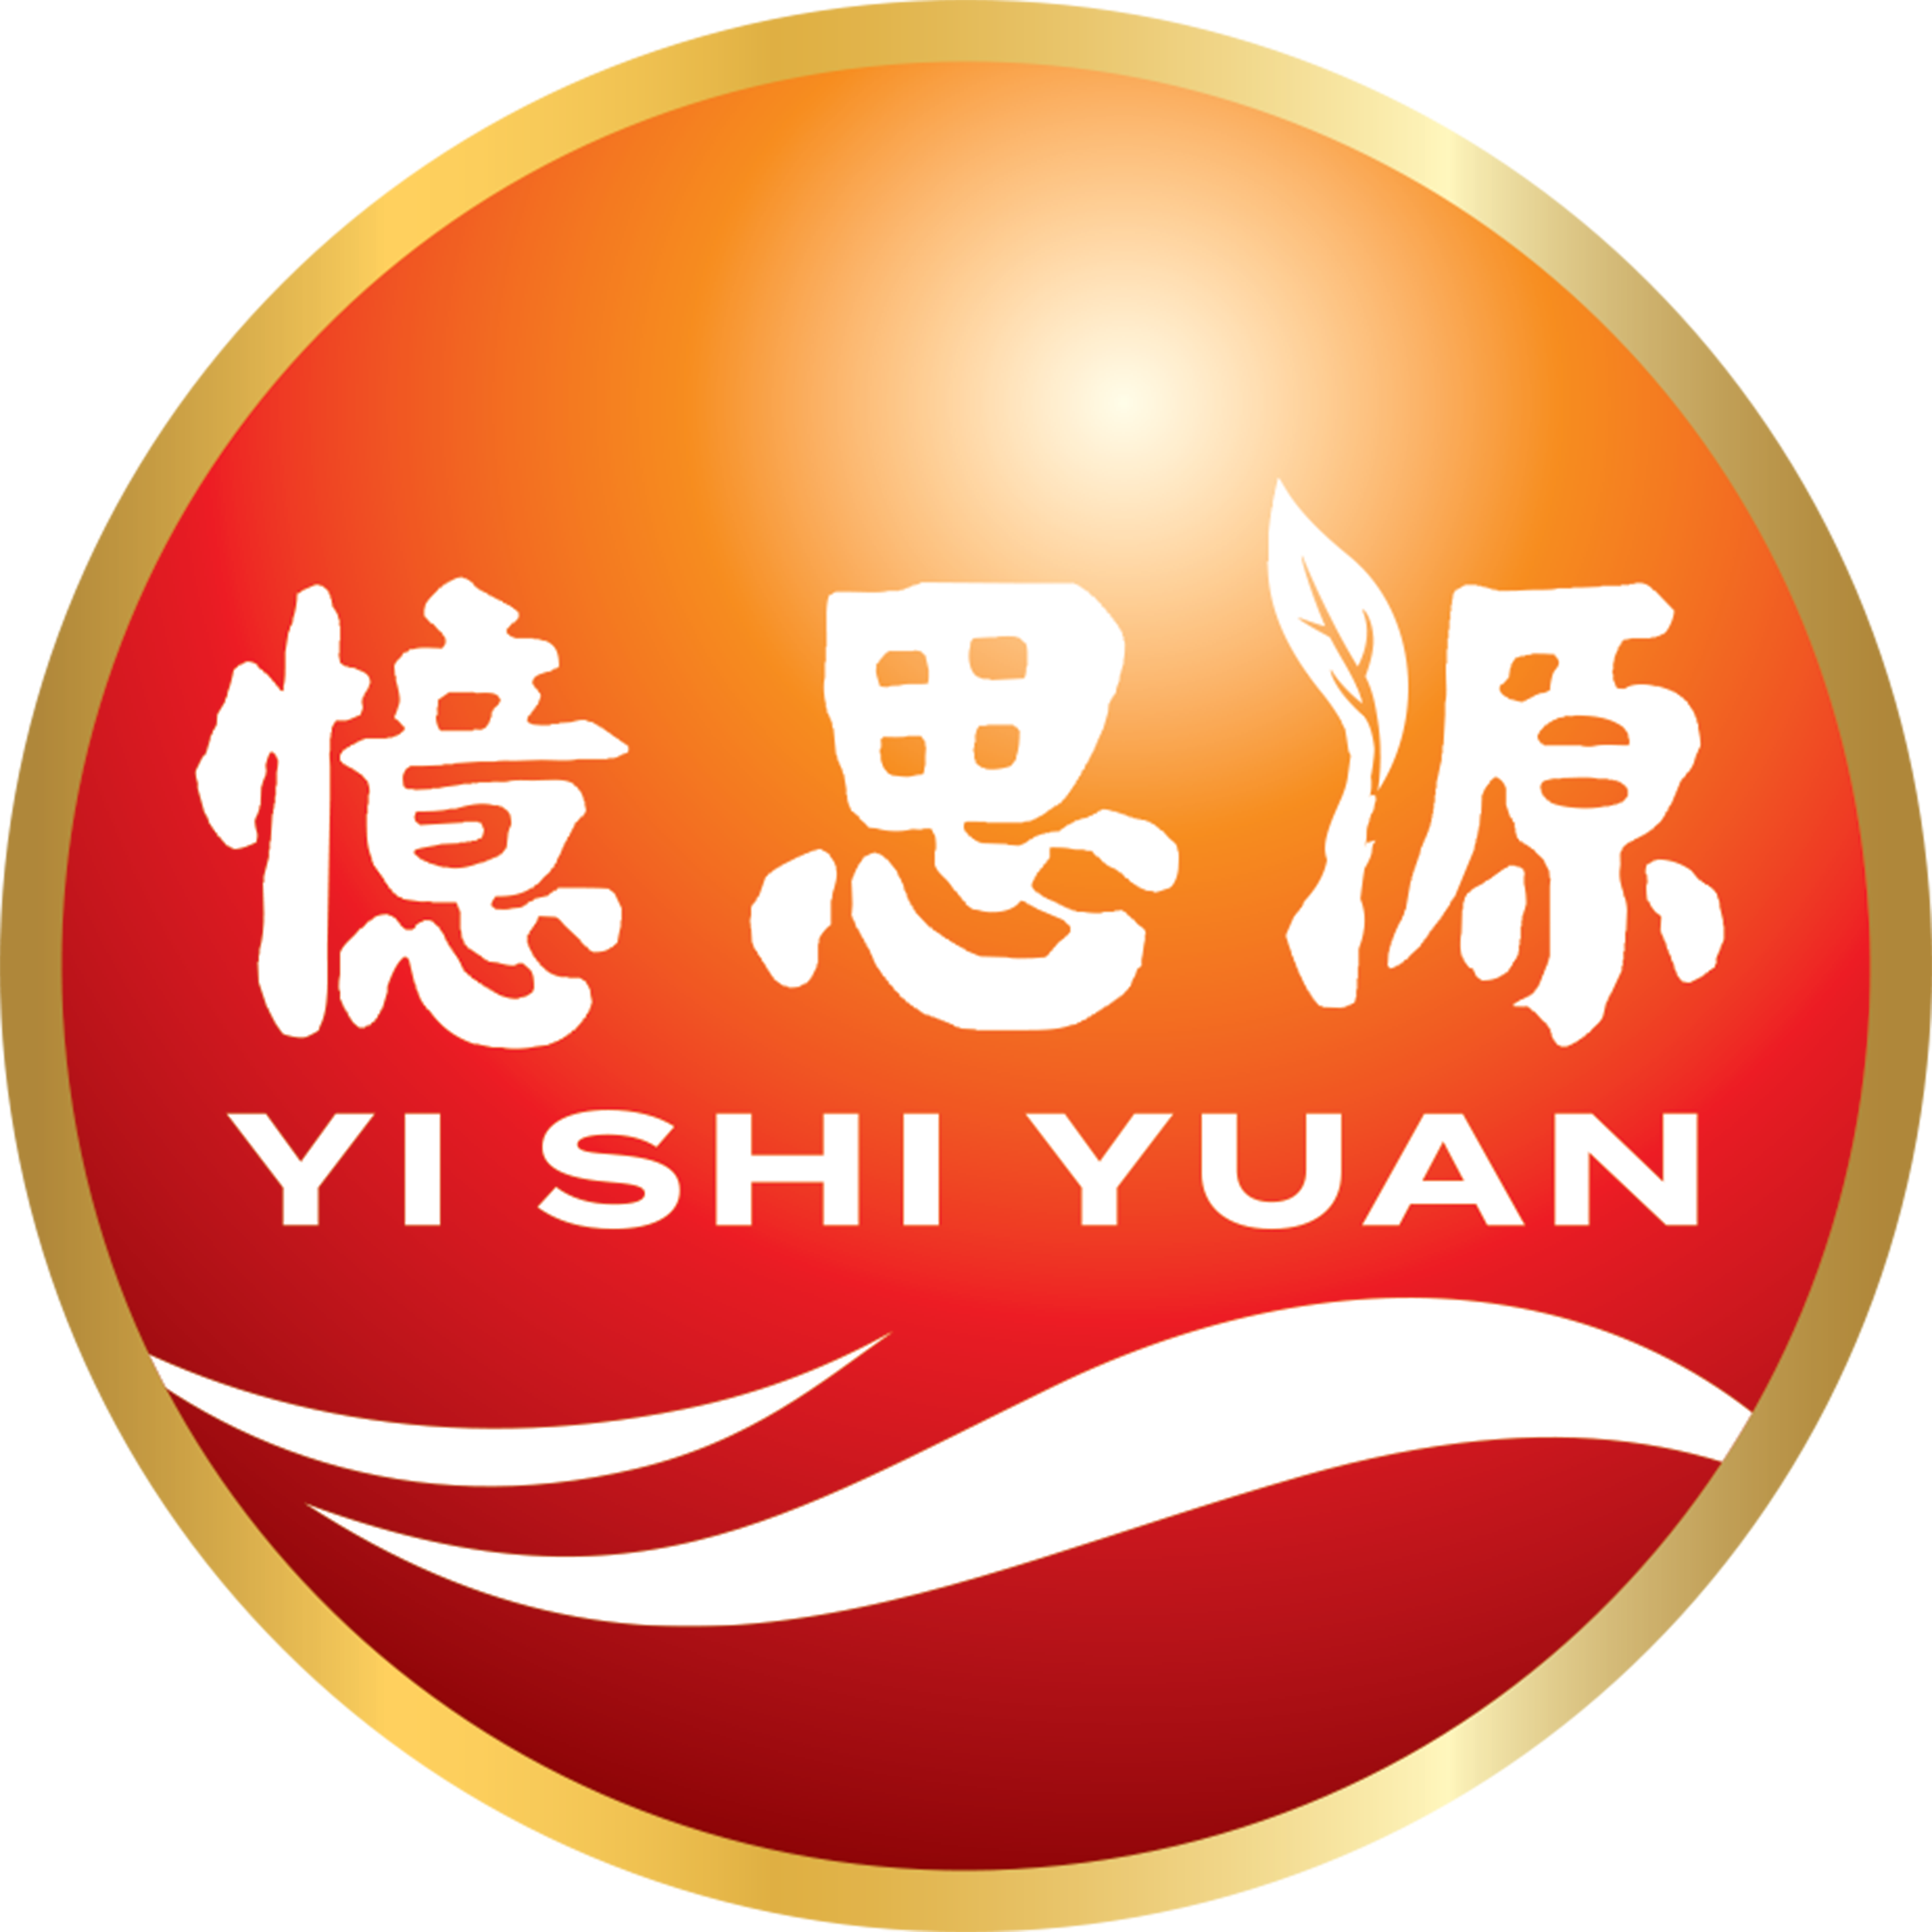 Yi Shi Yuan